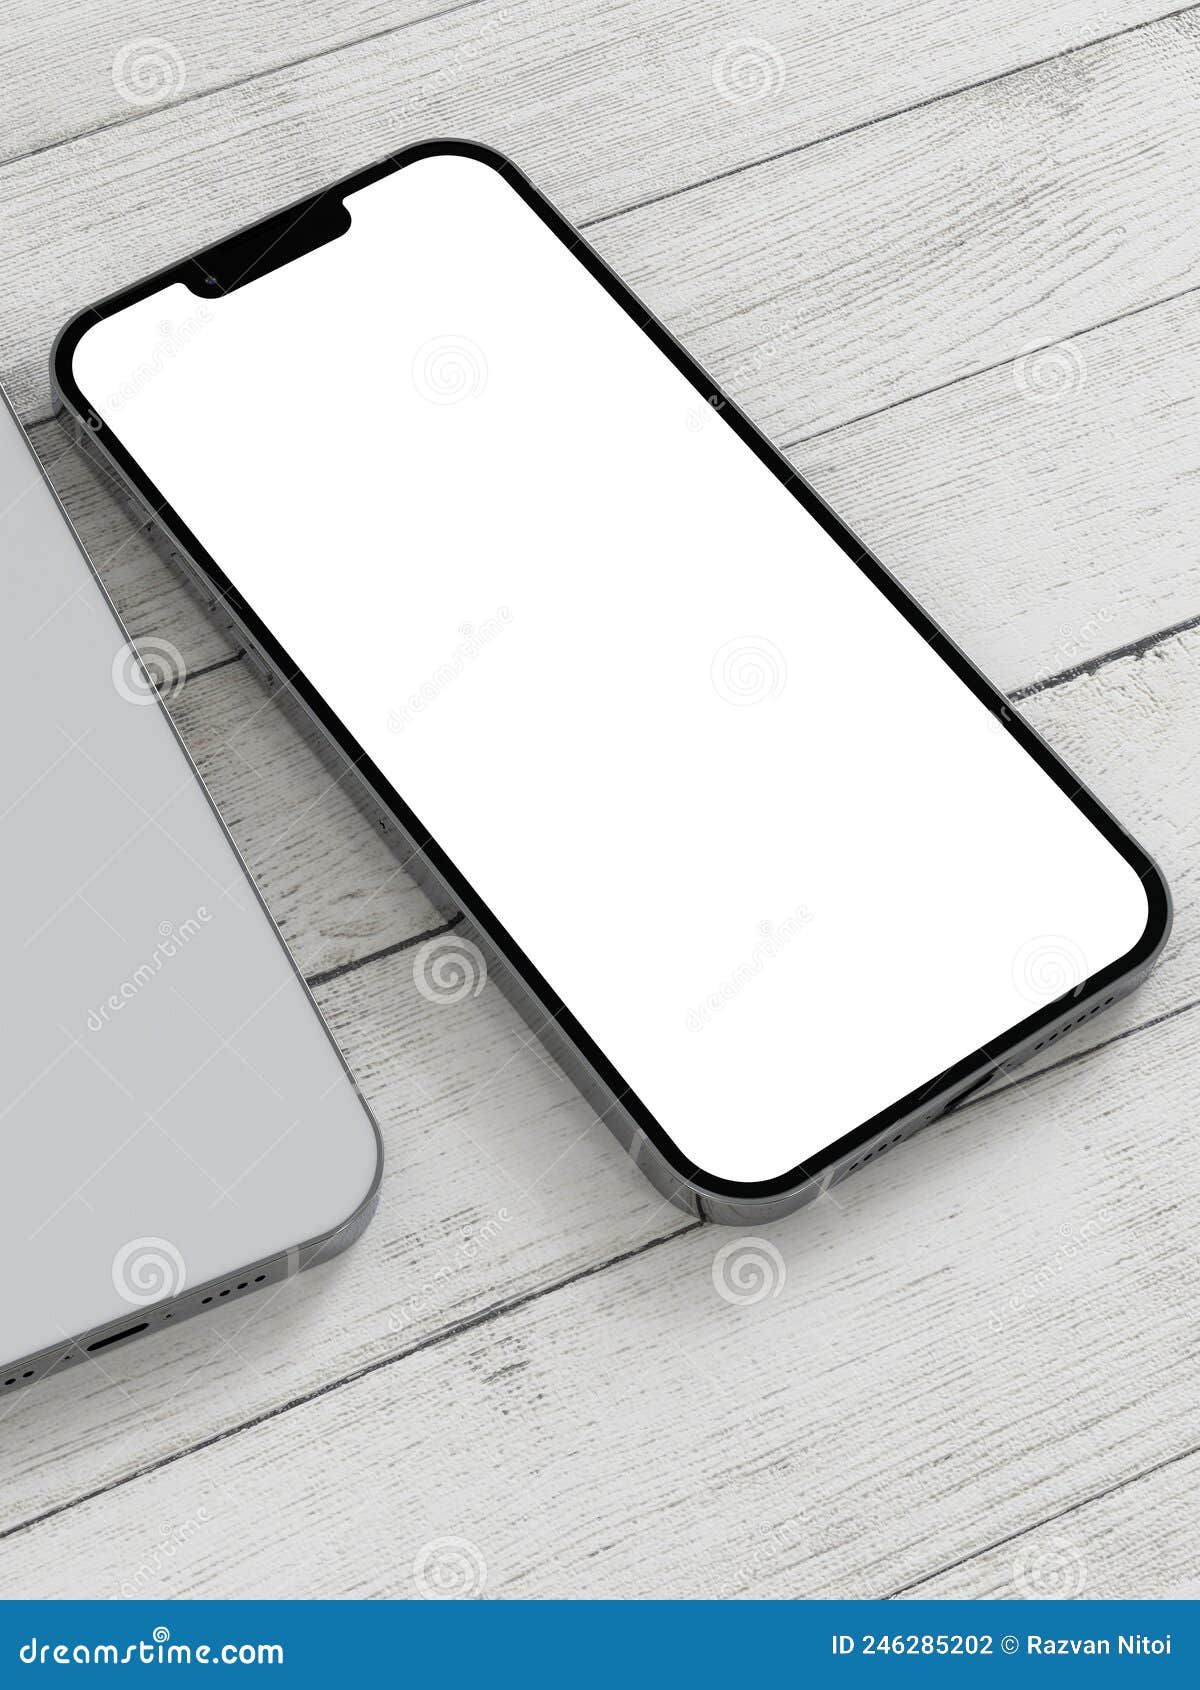 Thưởng thức vẻ đẹp hoàn hảo của iPhone màu bạc trong chiếc Silver iPhone Vector đầy tinh tế và sang trọng. Không chỉ là một thiết kế đơn thuần, chiếc iPhone màu bạc đã trở thành biểu tượng của sự đẳng cấp và phong cách. Tận hưởng hình ảnh liên quan để chiêm ngưỡng sự tuyệt vời này.